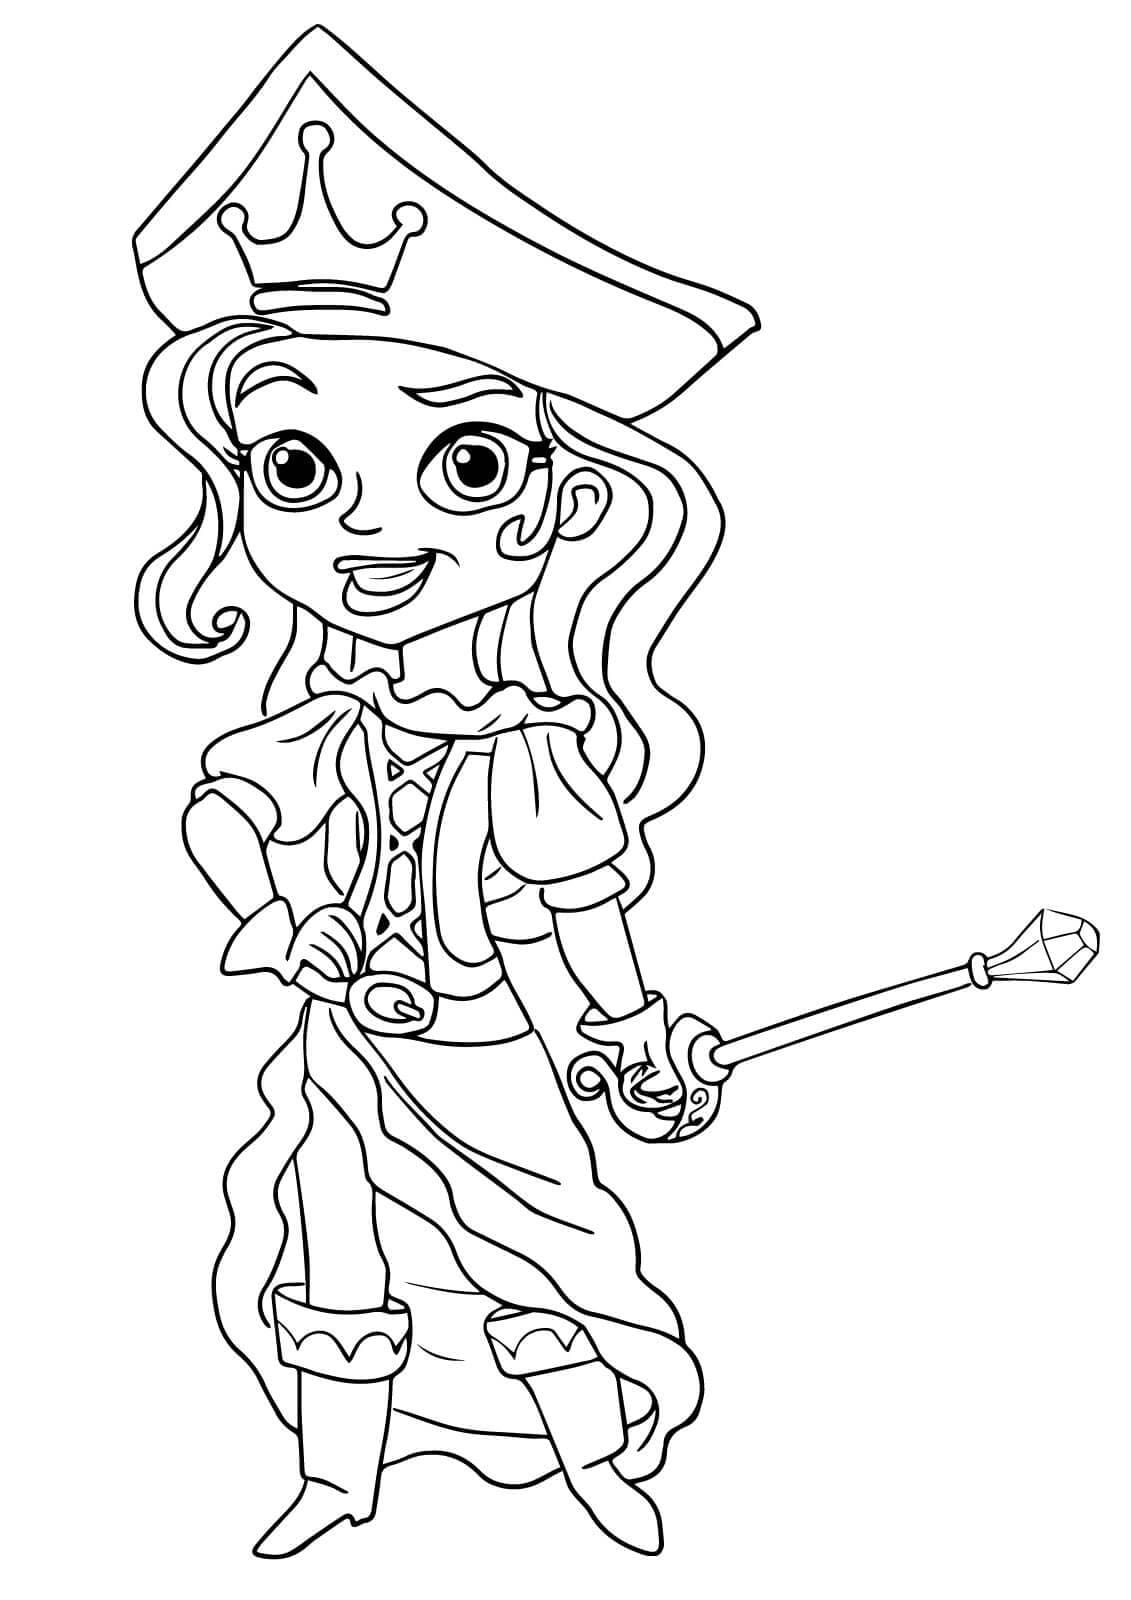 Princesse Pirate de Jake et les Pirates coloring page